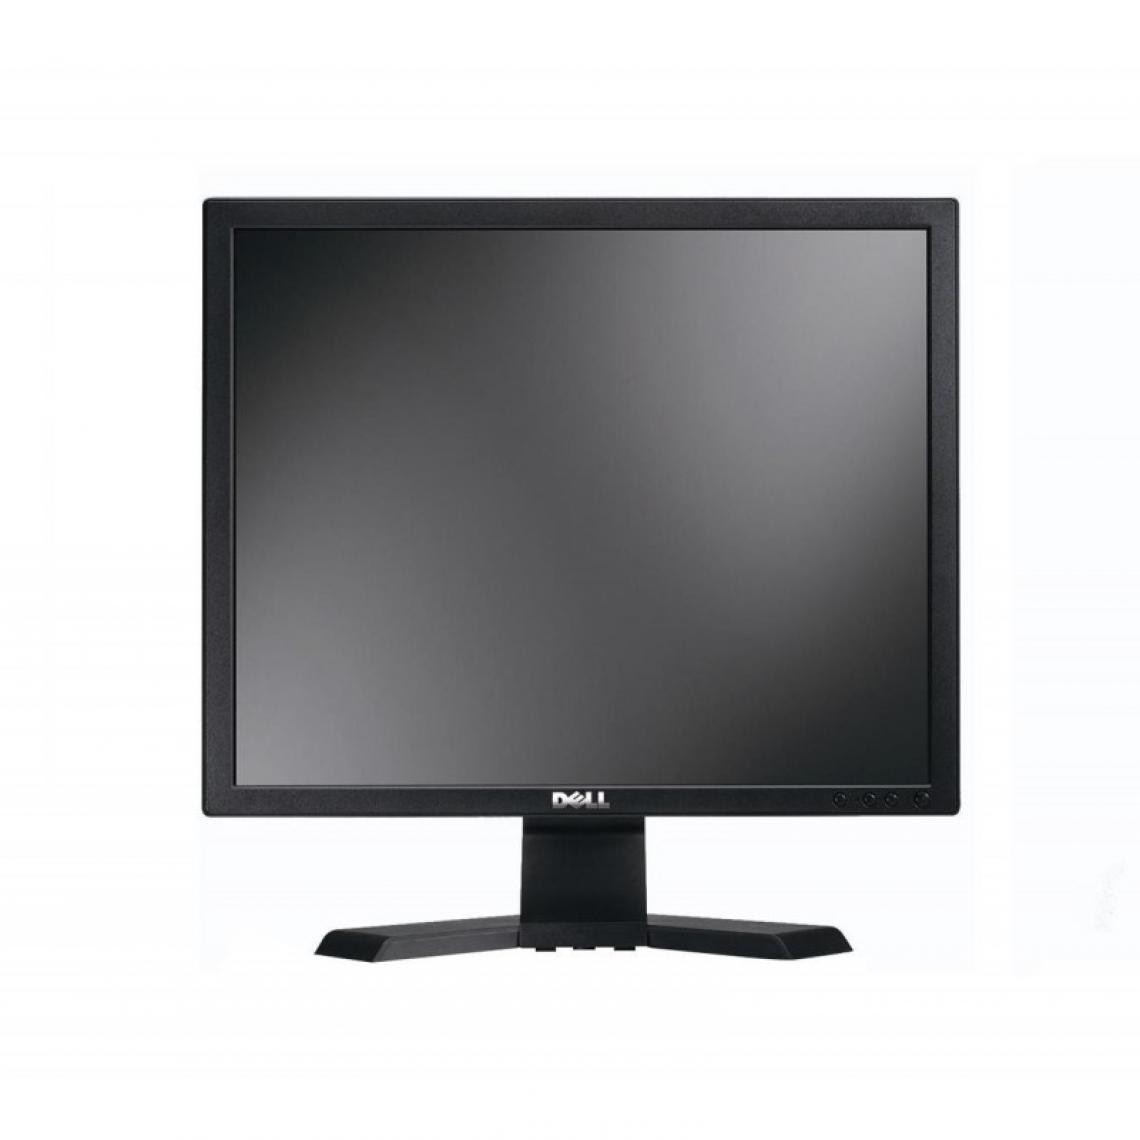 Dell - LCD DELL E190SB 19" - Moniteur PC